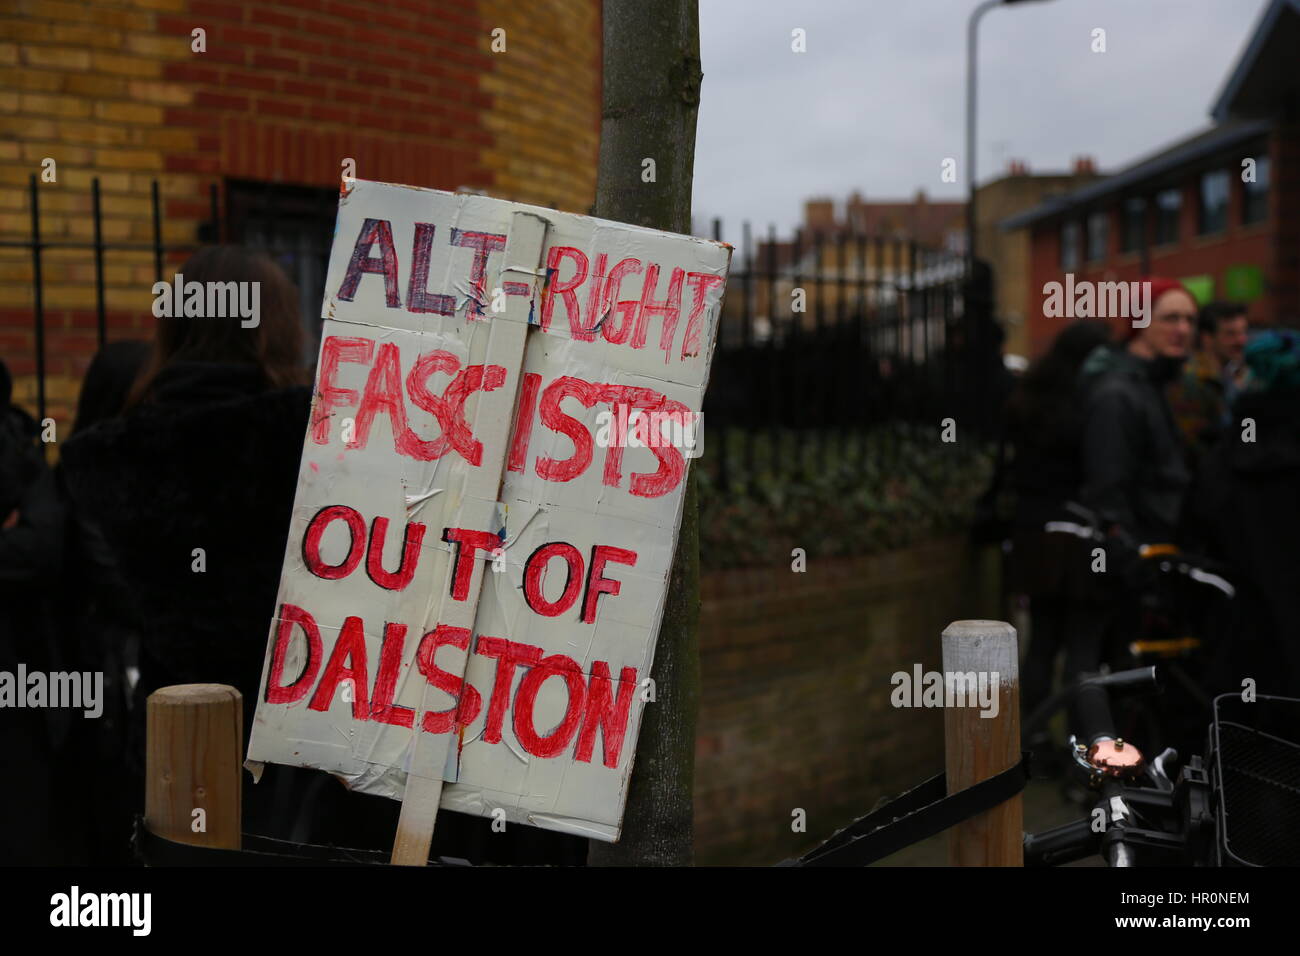 Dalston, Londra, Regno Unito. Il 25 febbraio 2017. Alt a destra fuori del Dalston cartellone. Una protesta al di fuori dell'LD50 Gallery organizzato da Hackney si alza per il razzismo e il fascismo e unirsi contro il fascismo. Gli artisti e gli attivisti stanno protestando per chiedere la chiusura di LD50, in Dalston, East London, dopo le accuse la galleria ha fornito una piattaforma di anti-immigrati, Islamophobic e "alt-destra" figure e promosso "odio non discorso libero". Penelope Barritt/Alamy Live News Foto Stock